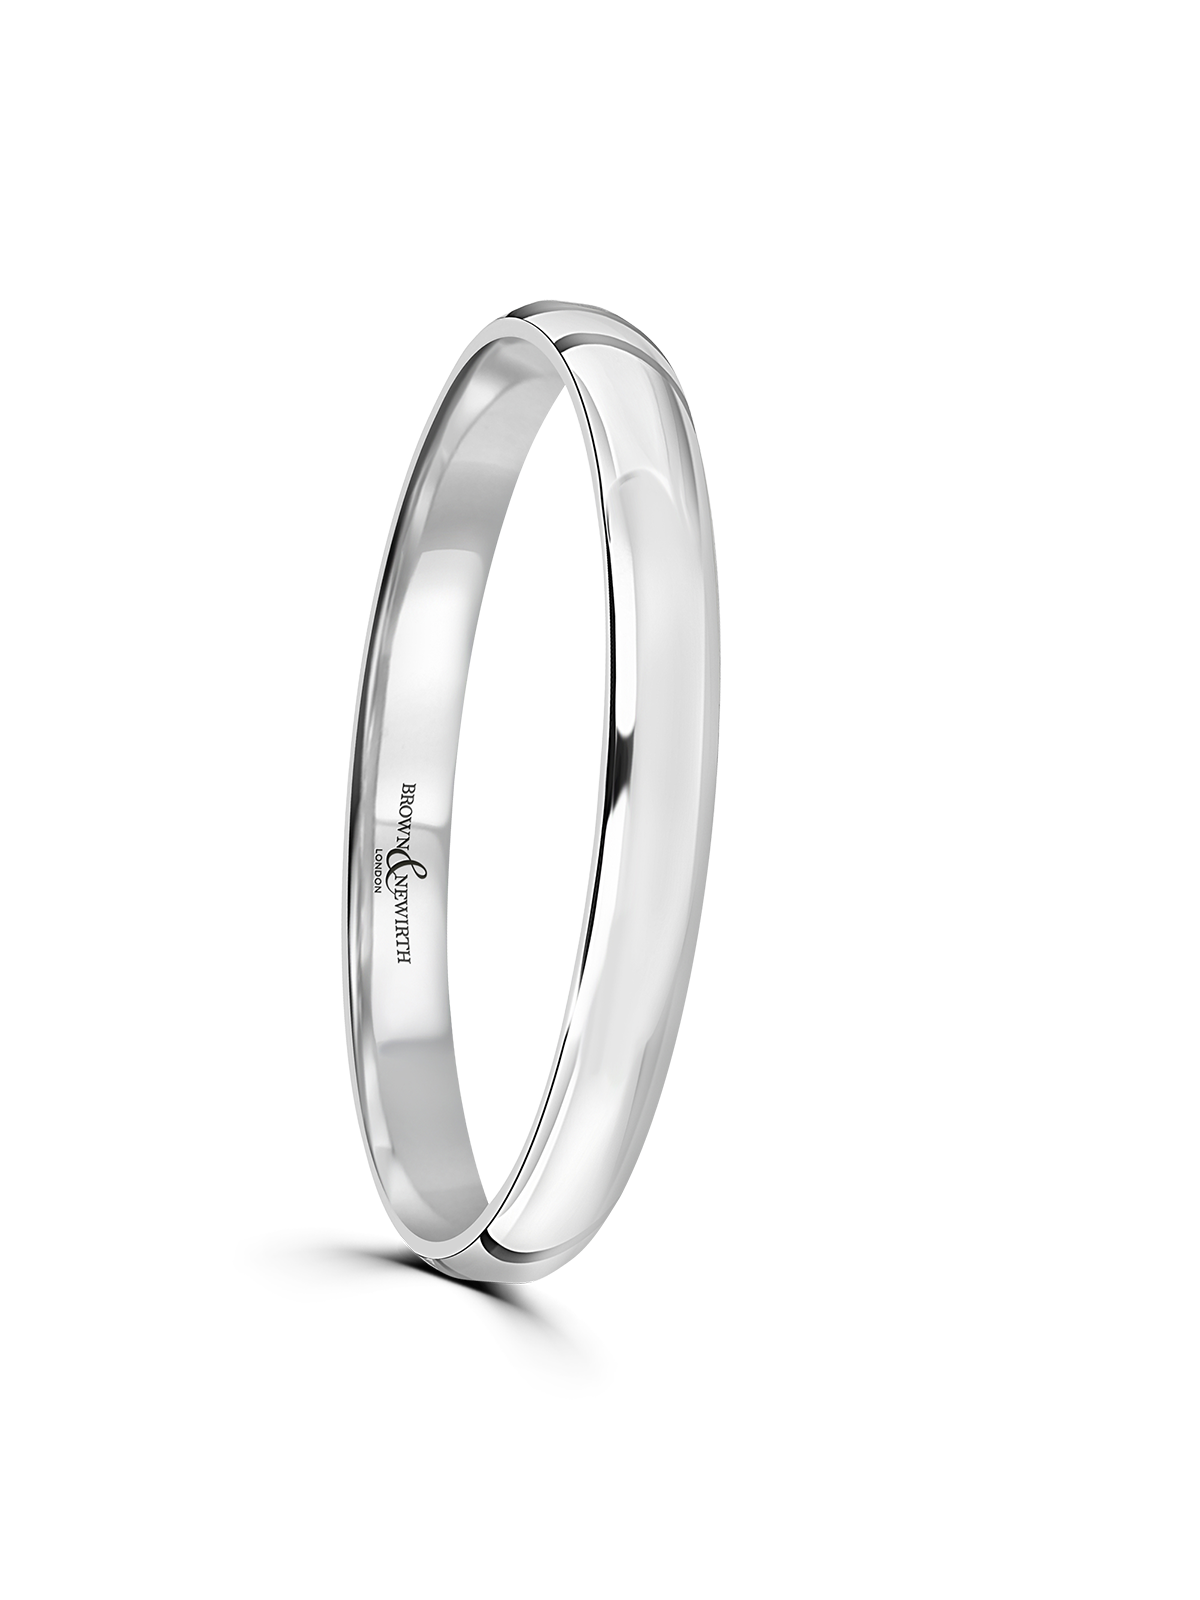 Brown & Newirth Honest 2mm Wedding Ring in Platinum